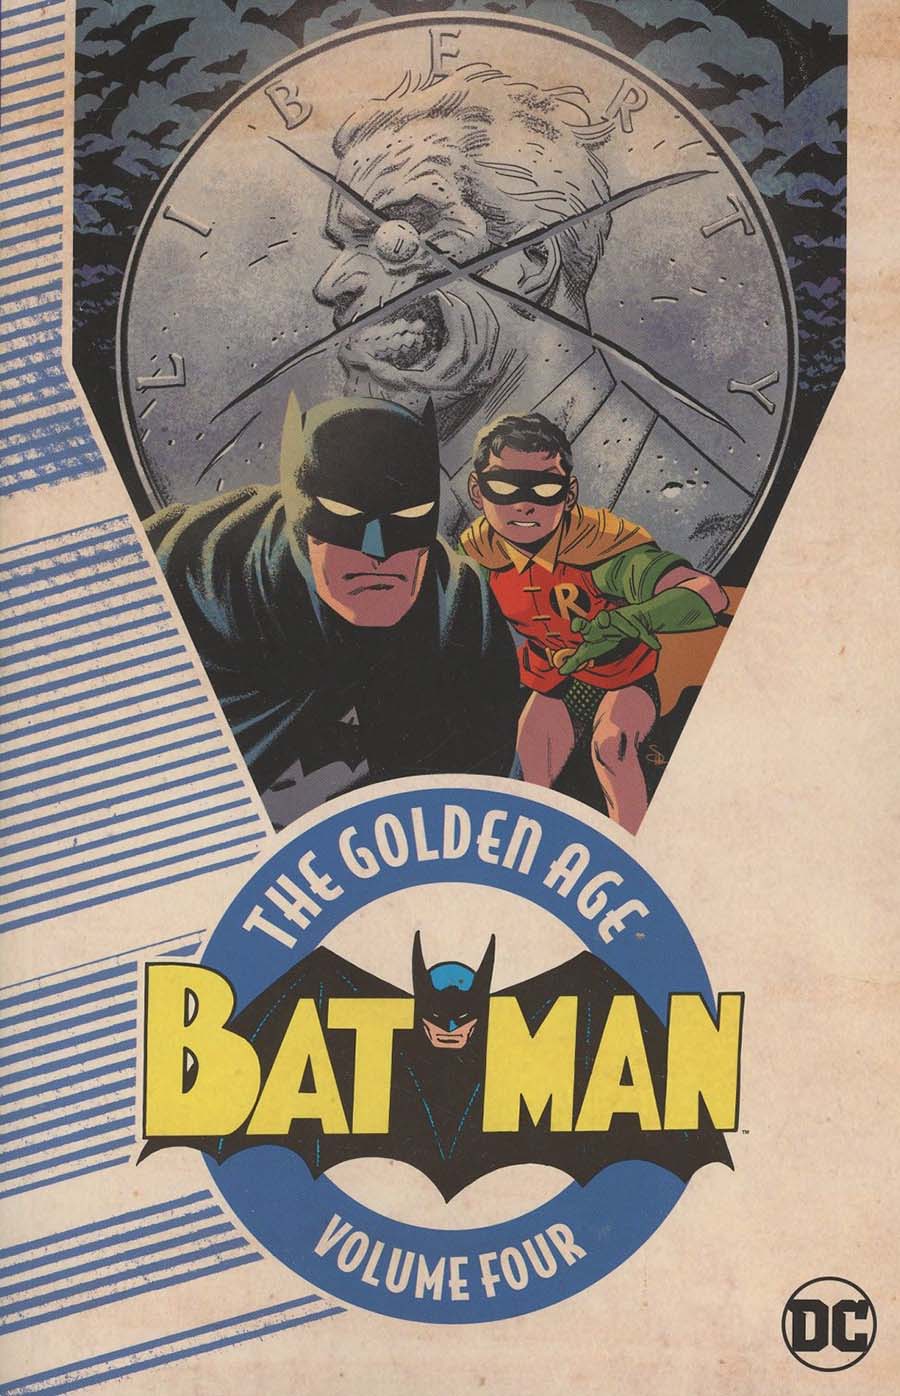 Batman The Golden Age Vol 4 TP